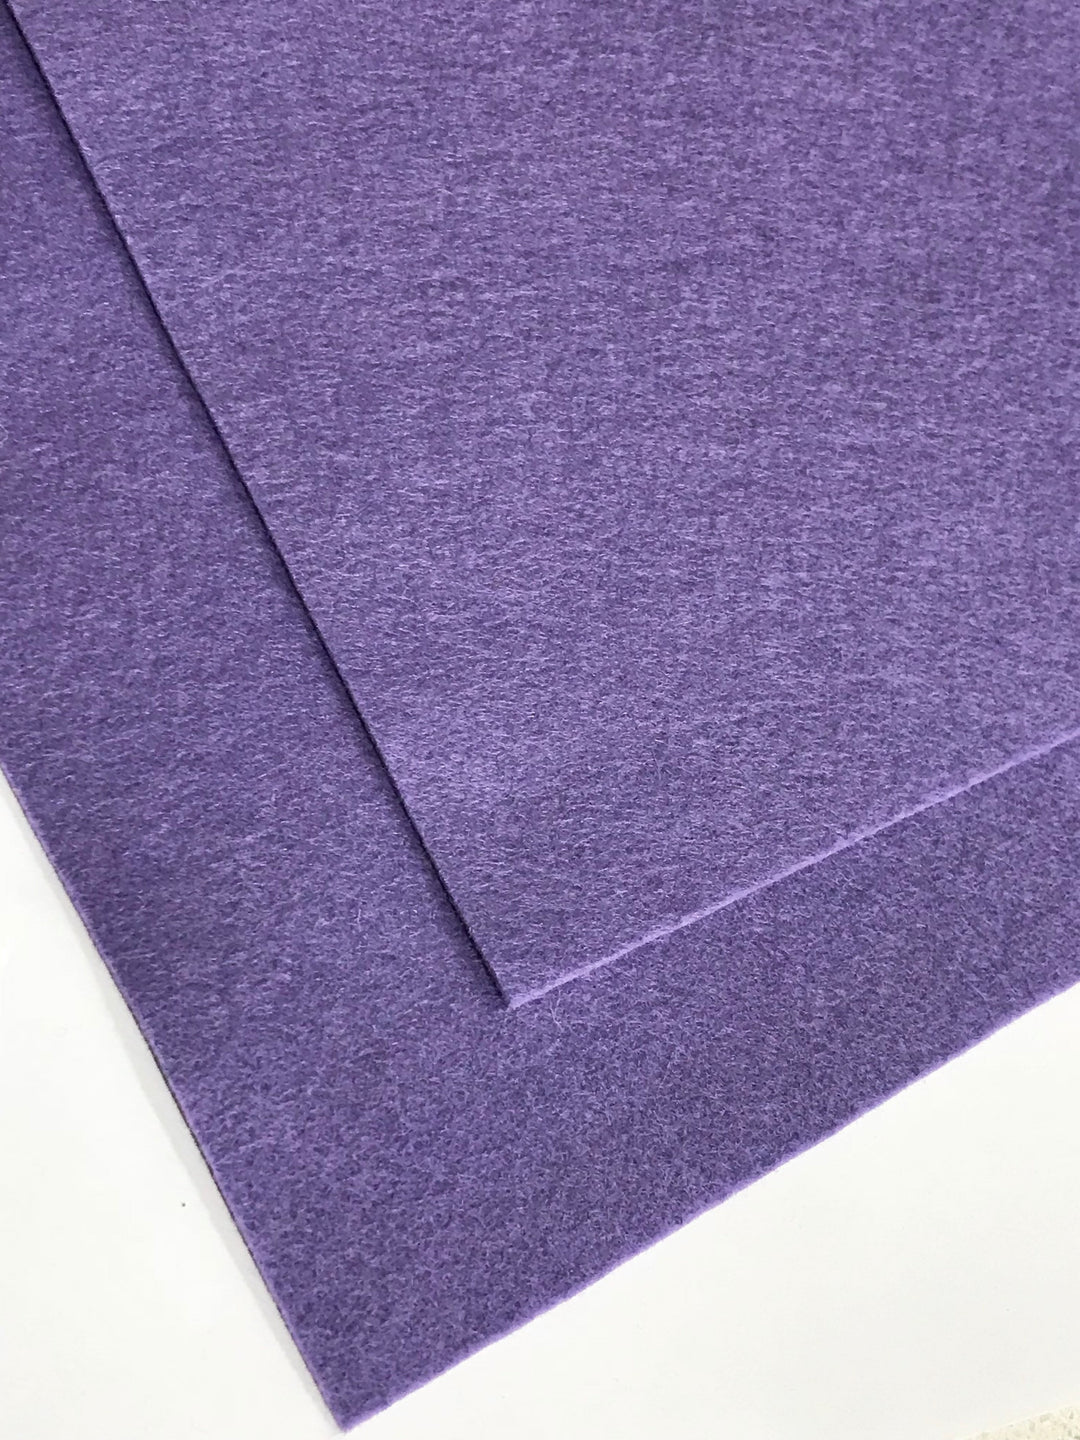 Feutre de laine mérinos violet chiné de 1 mm, feuille de 8 x 11 po - n° 62